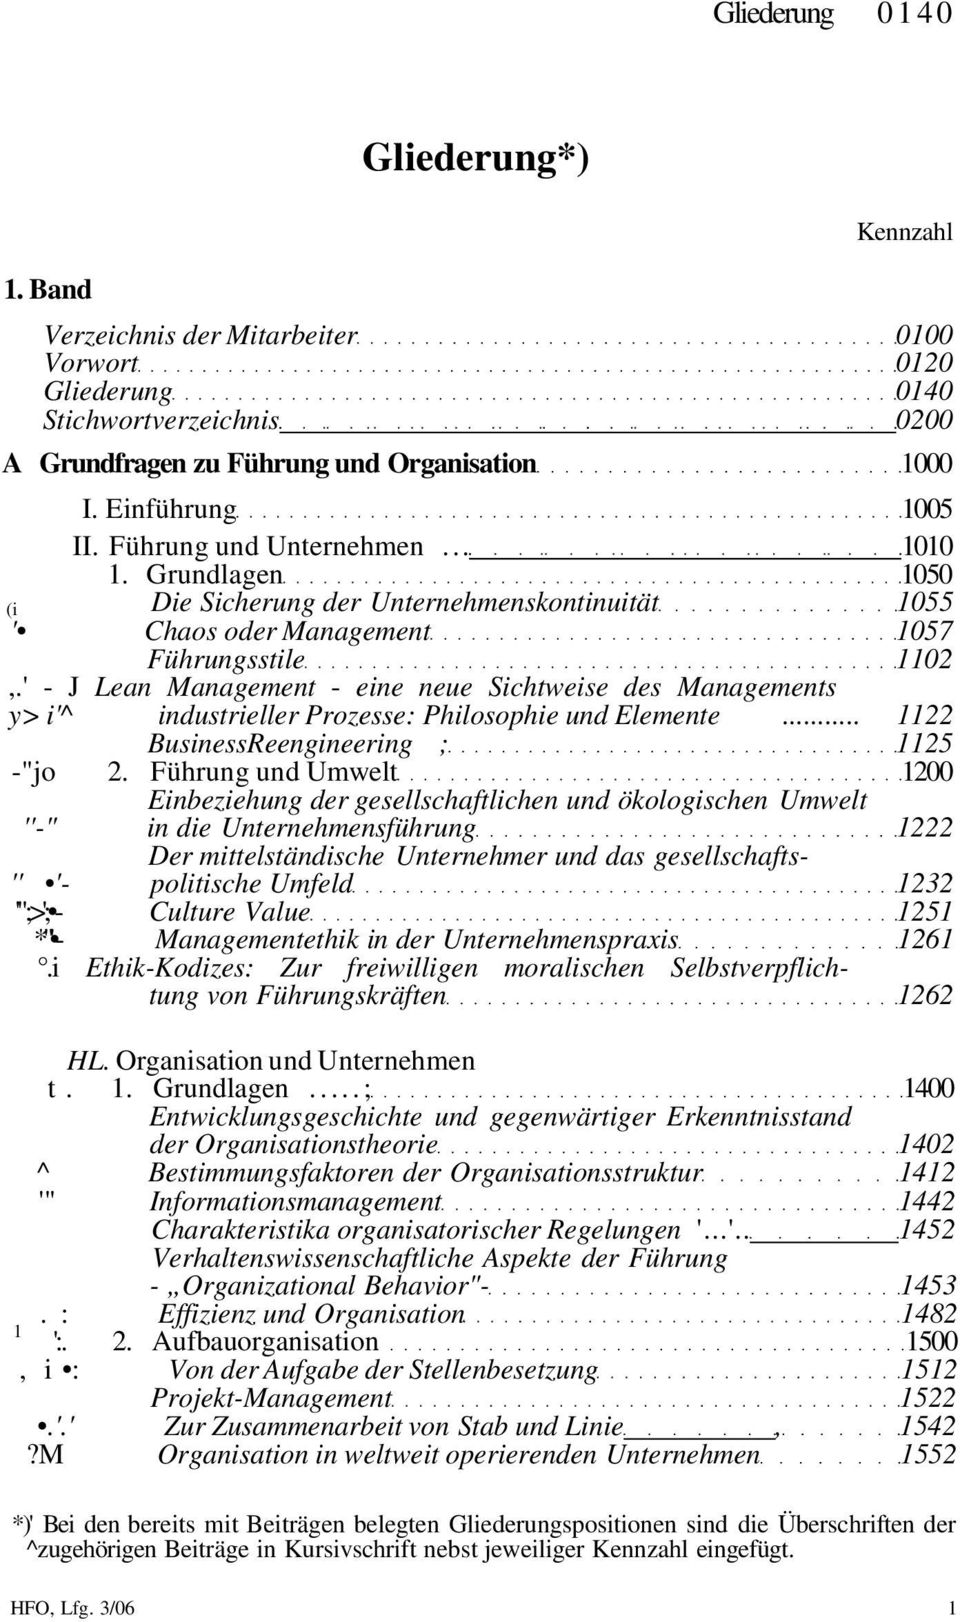 ' - J Lean Management - eine neue Sichtweise des Managements y> i'^ industrieller Prozesse: Philosophie und Elemente... 1122 BusinessReengineering ; 1125 -"jo 2.